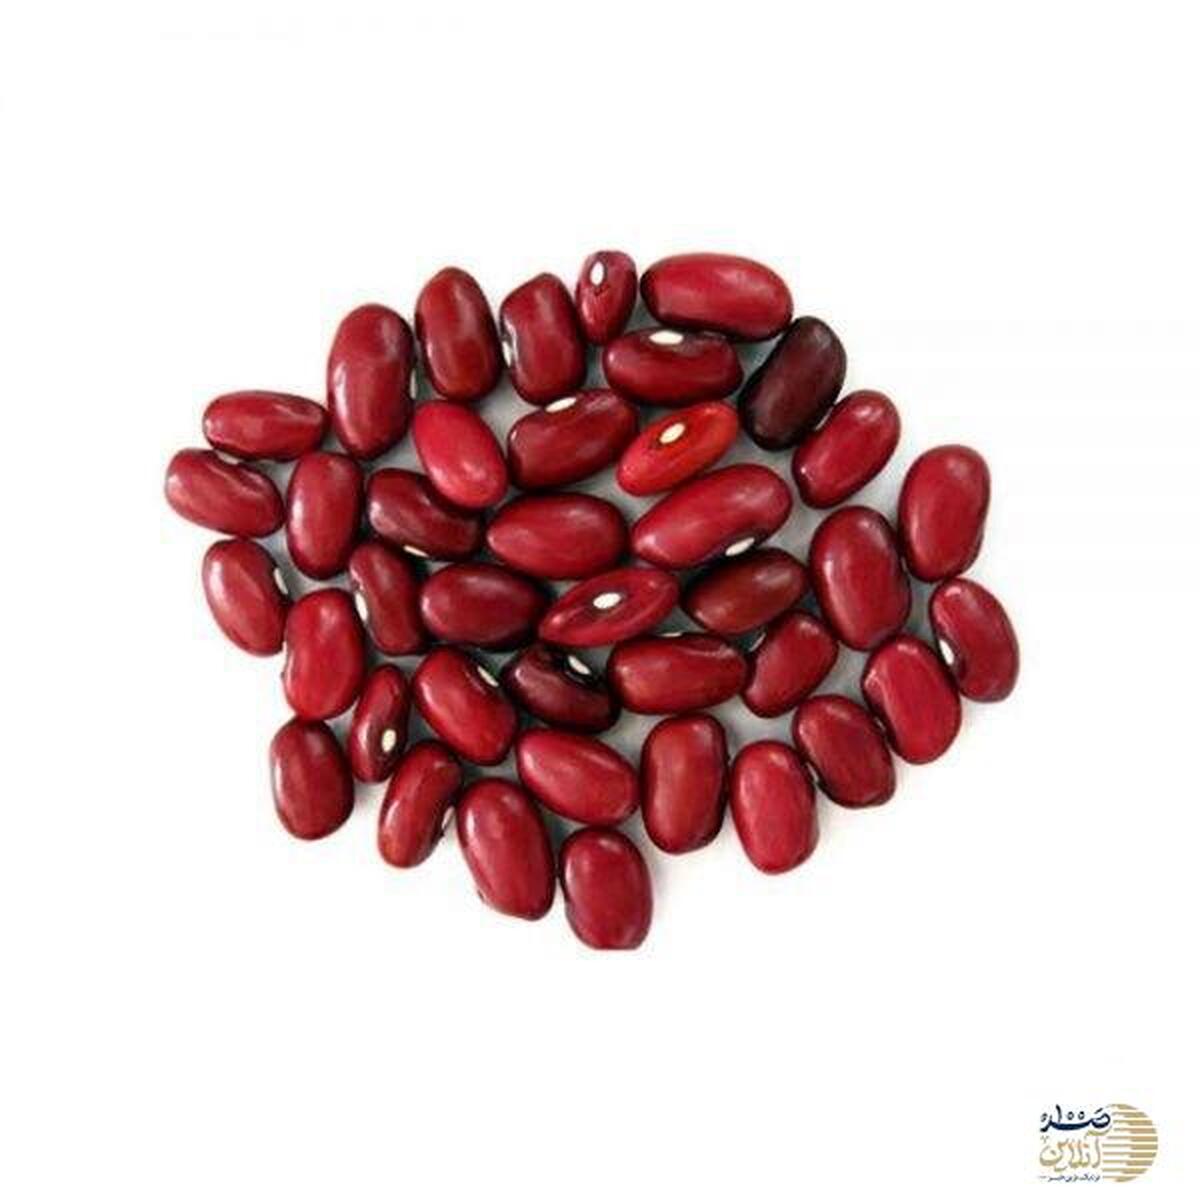 تمام خواص دانه های نیا در این دانه قرمز است / بخورید و از بیماری ها خلاص شوید مخصوصا قند خون و فشار خون